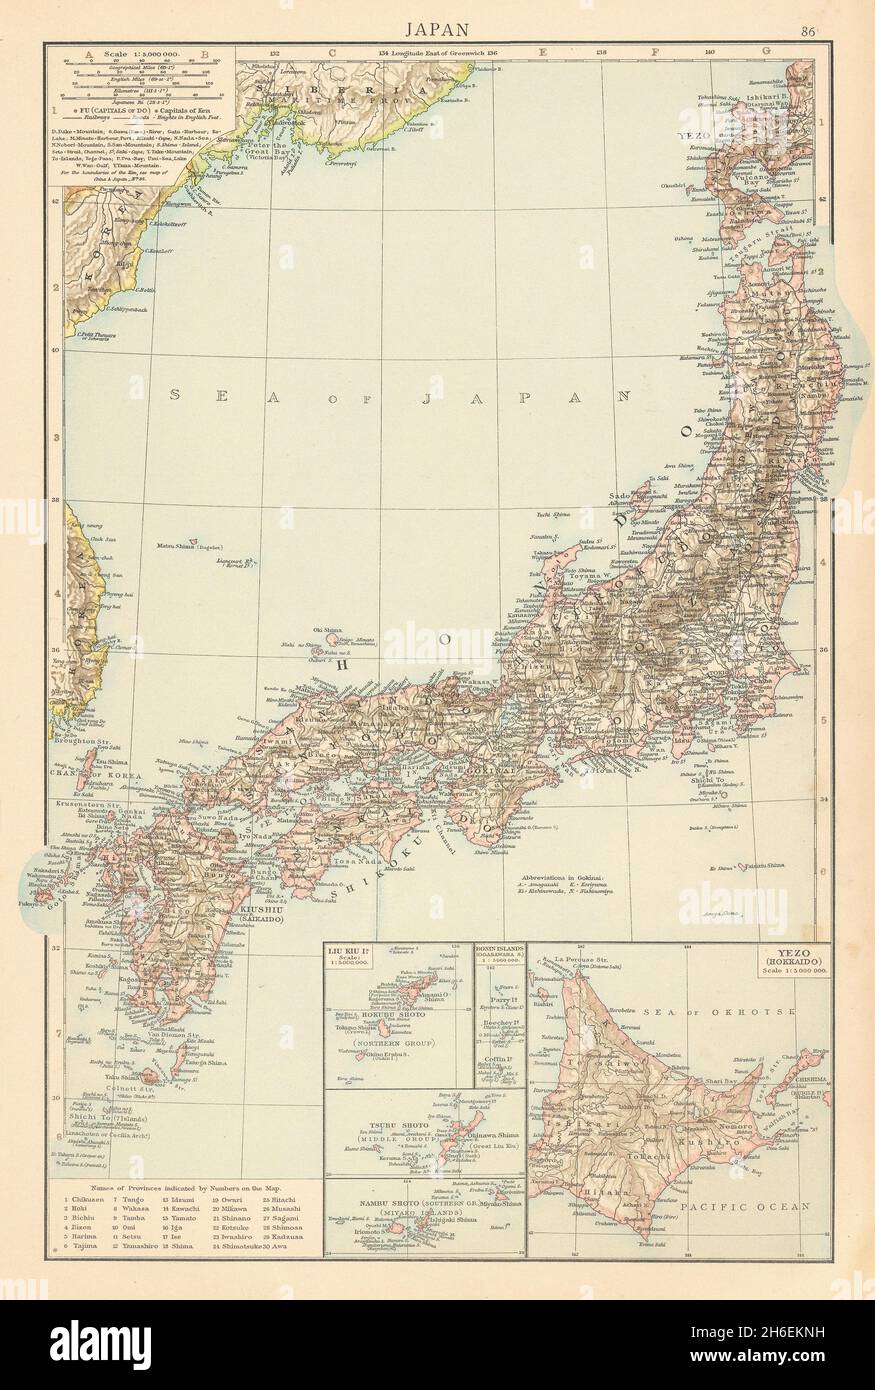 Giappone che mostra le ferrovie e i porti del trattato. IL TIMES 1895 antica mappa cartografica antica Foto Stock